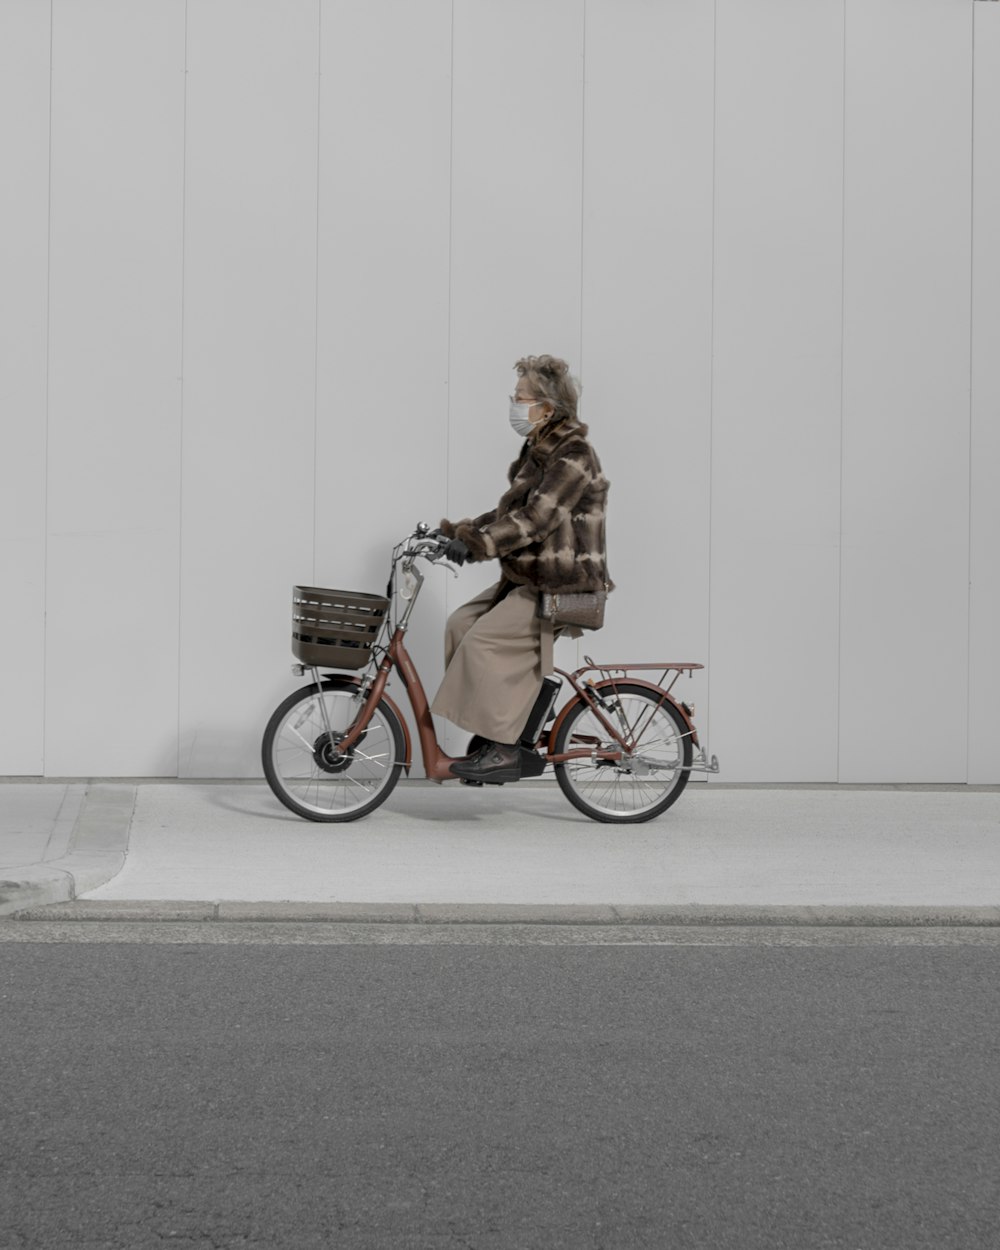 Frau fährt Citybike in der Nähe von Mauer und Straße